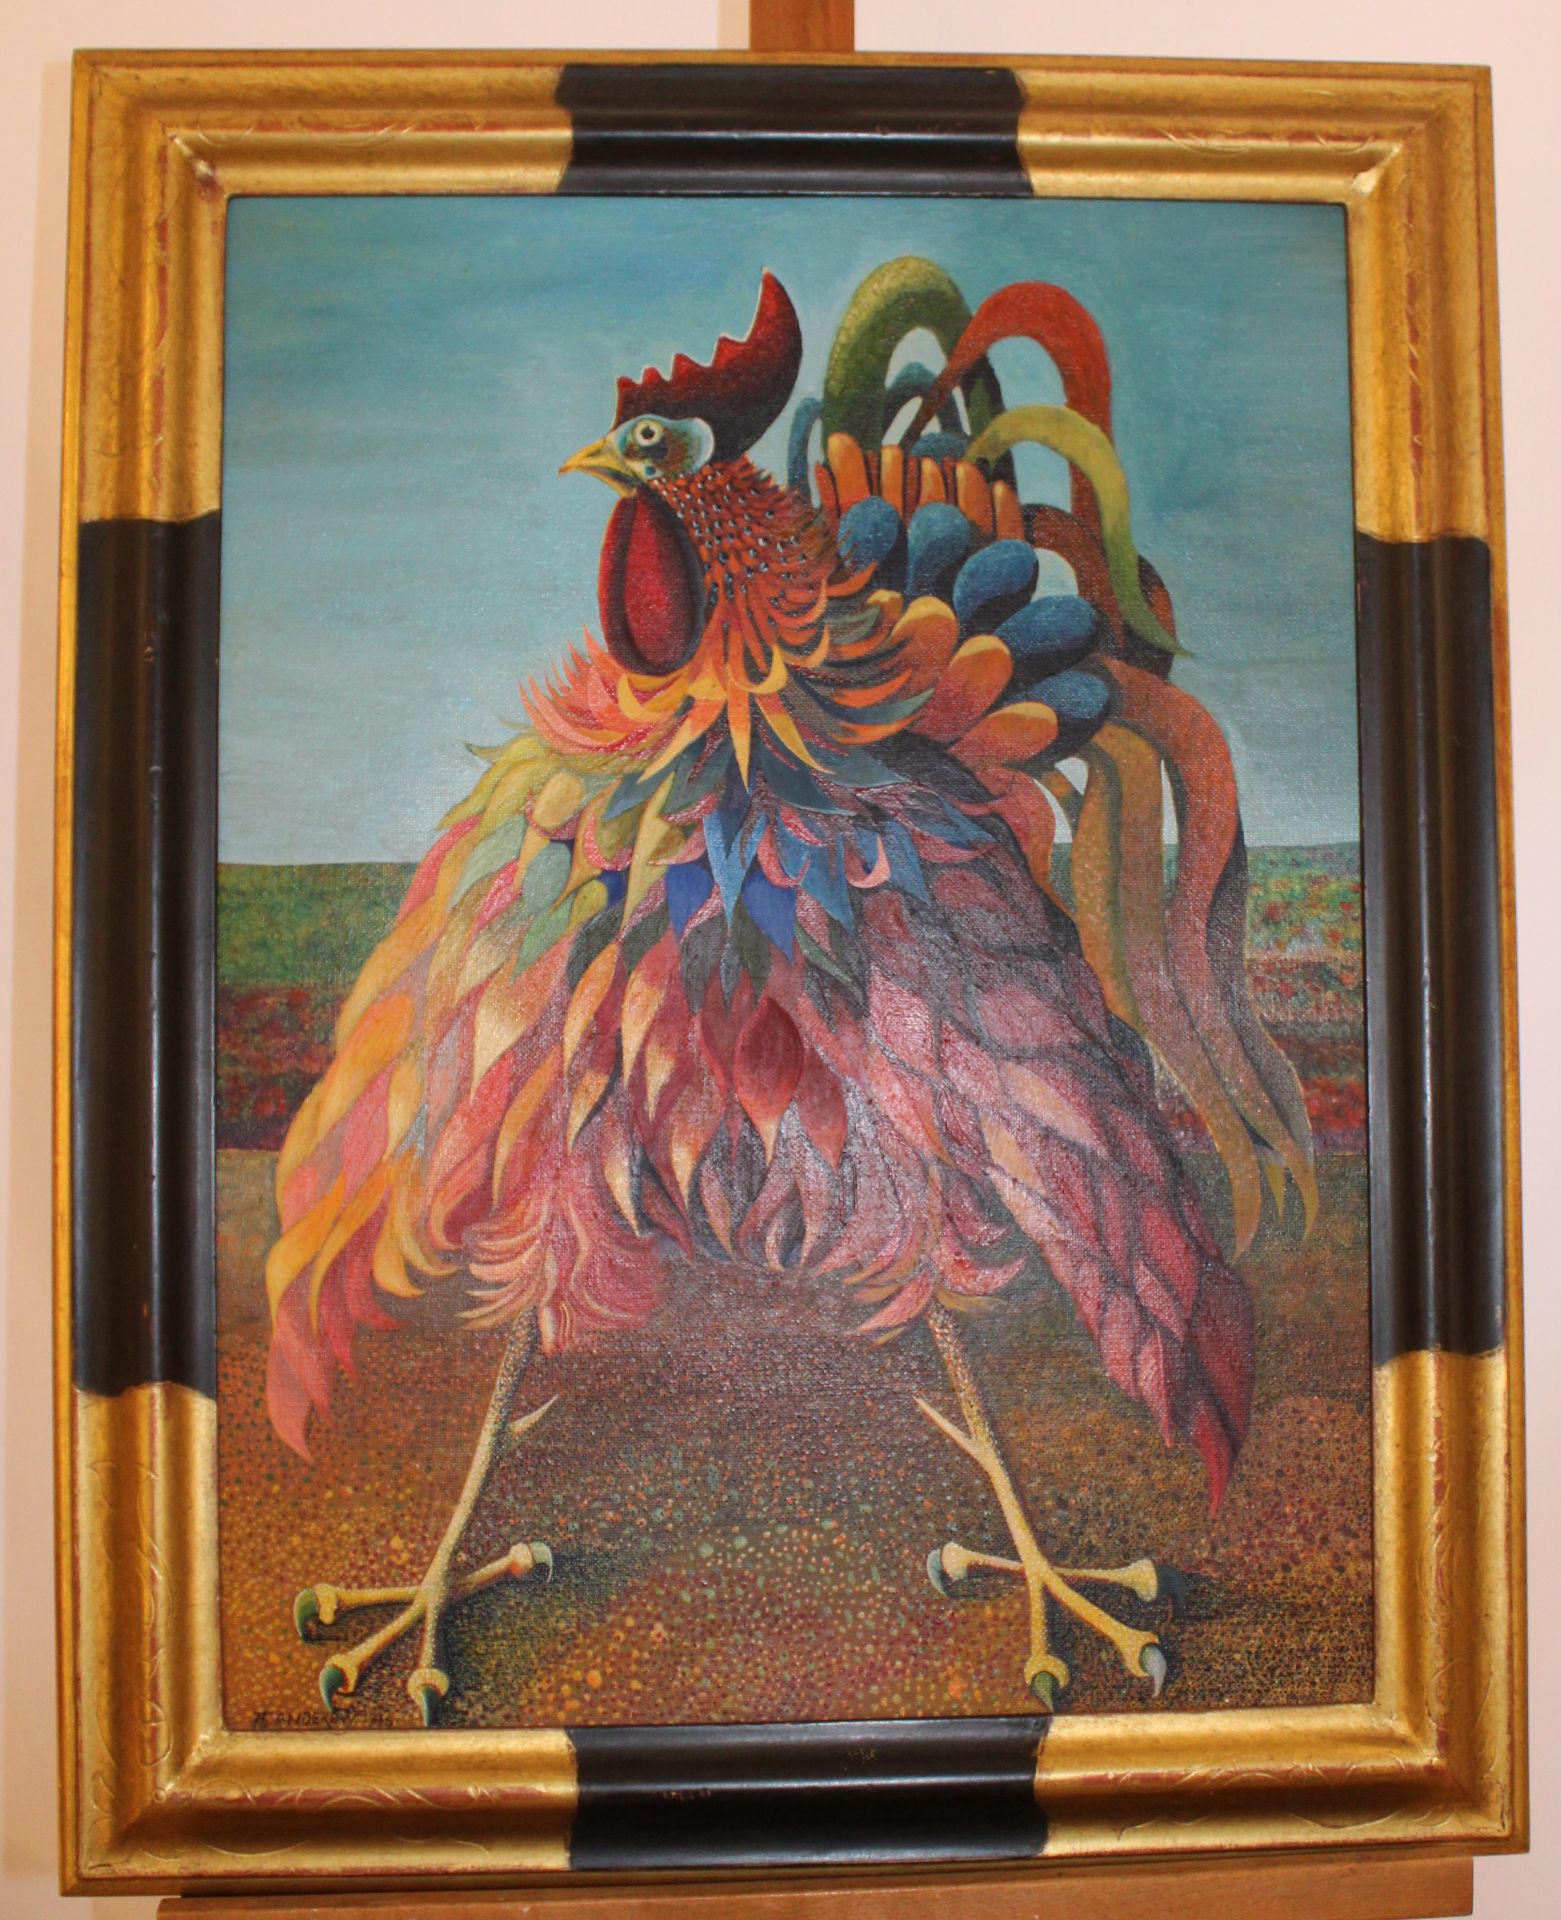 Andekow "Gallus Gigantus" 1976